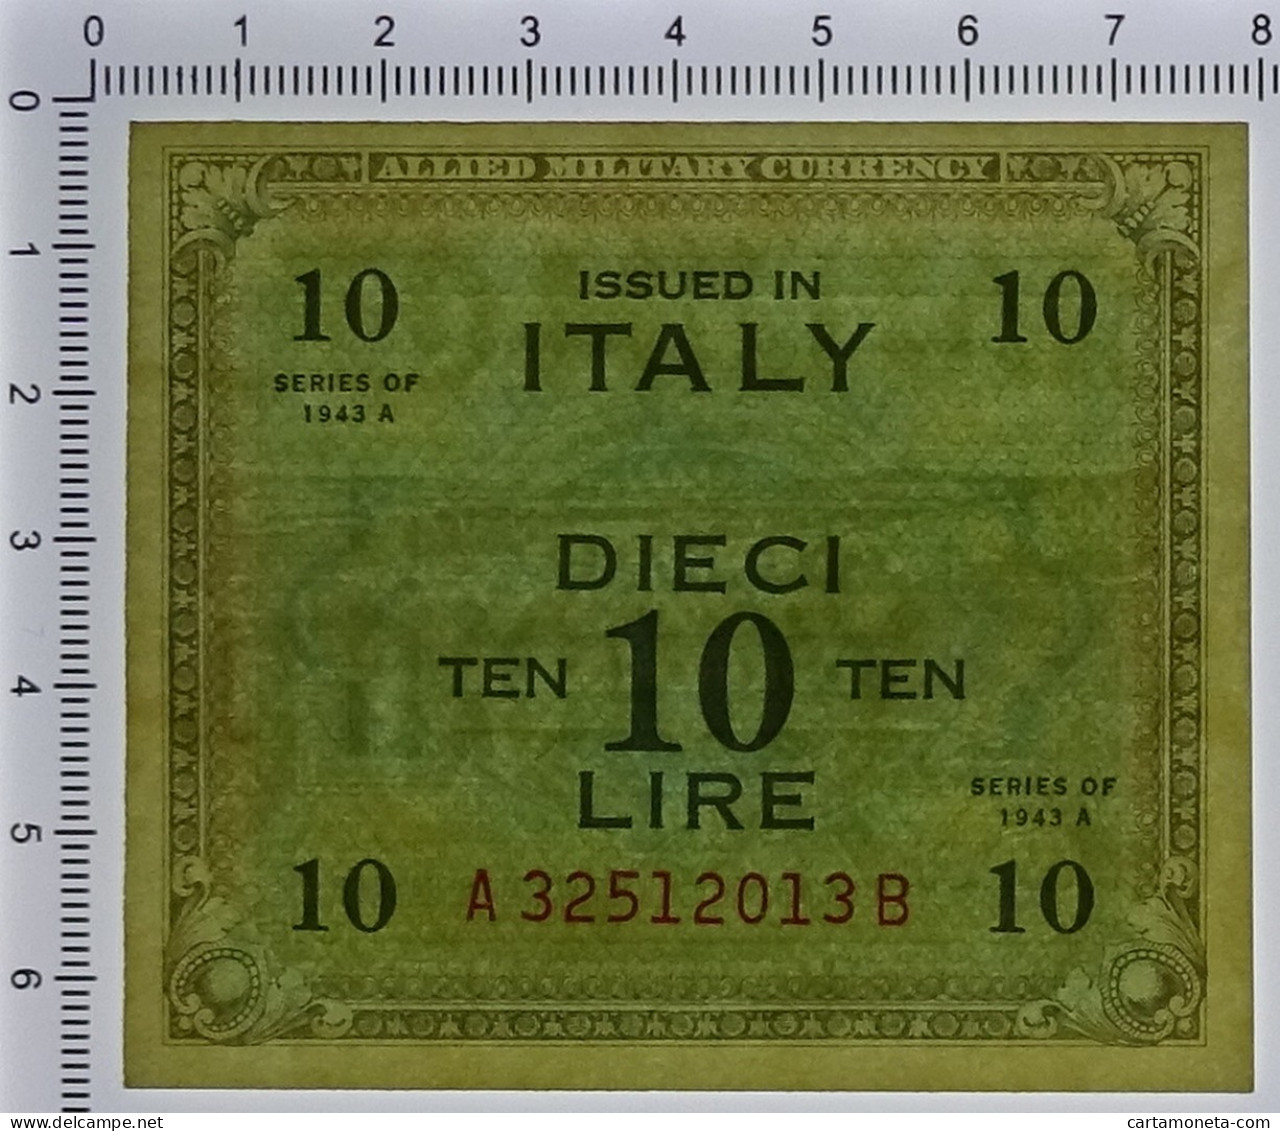 10 LIRE OCCUPAZIONE AMERICANA IN ITALIA BILINGUE FLC A-B 1943 A SUP+ - Occupation Alliés Seconde Guerre Mondiale